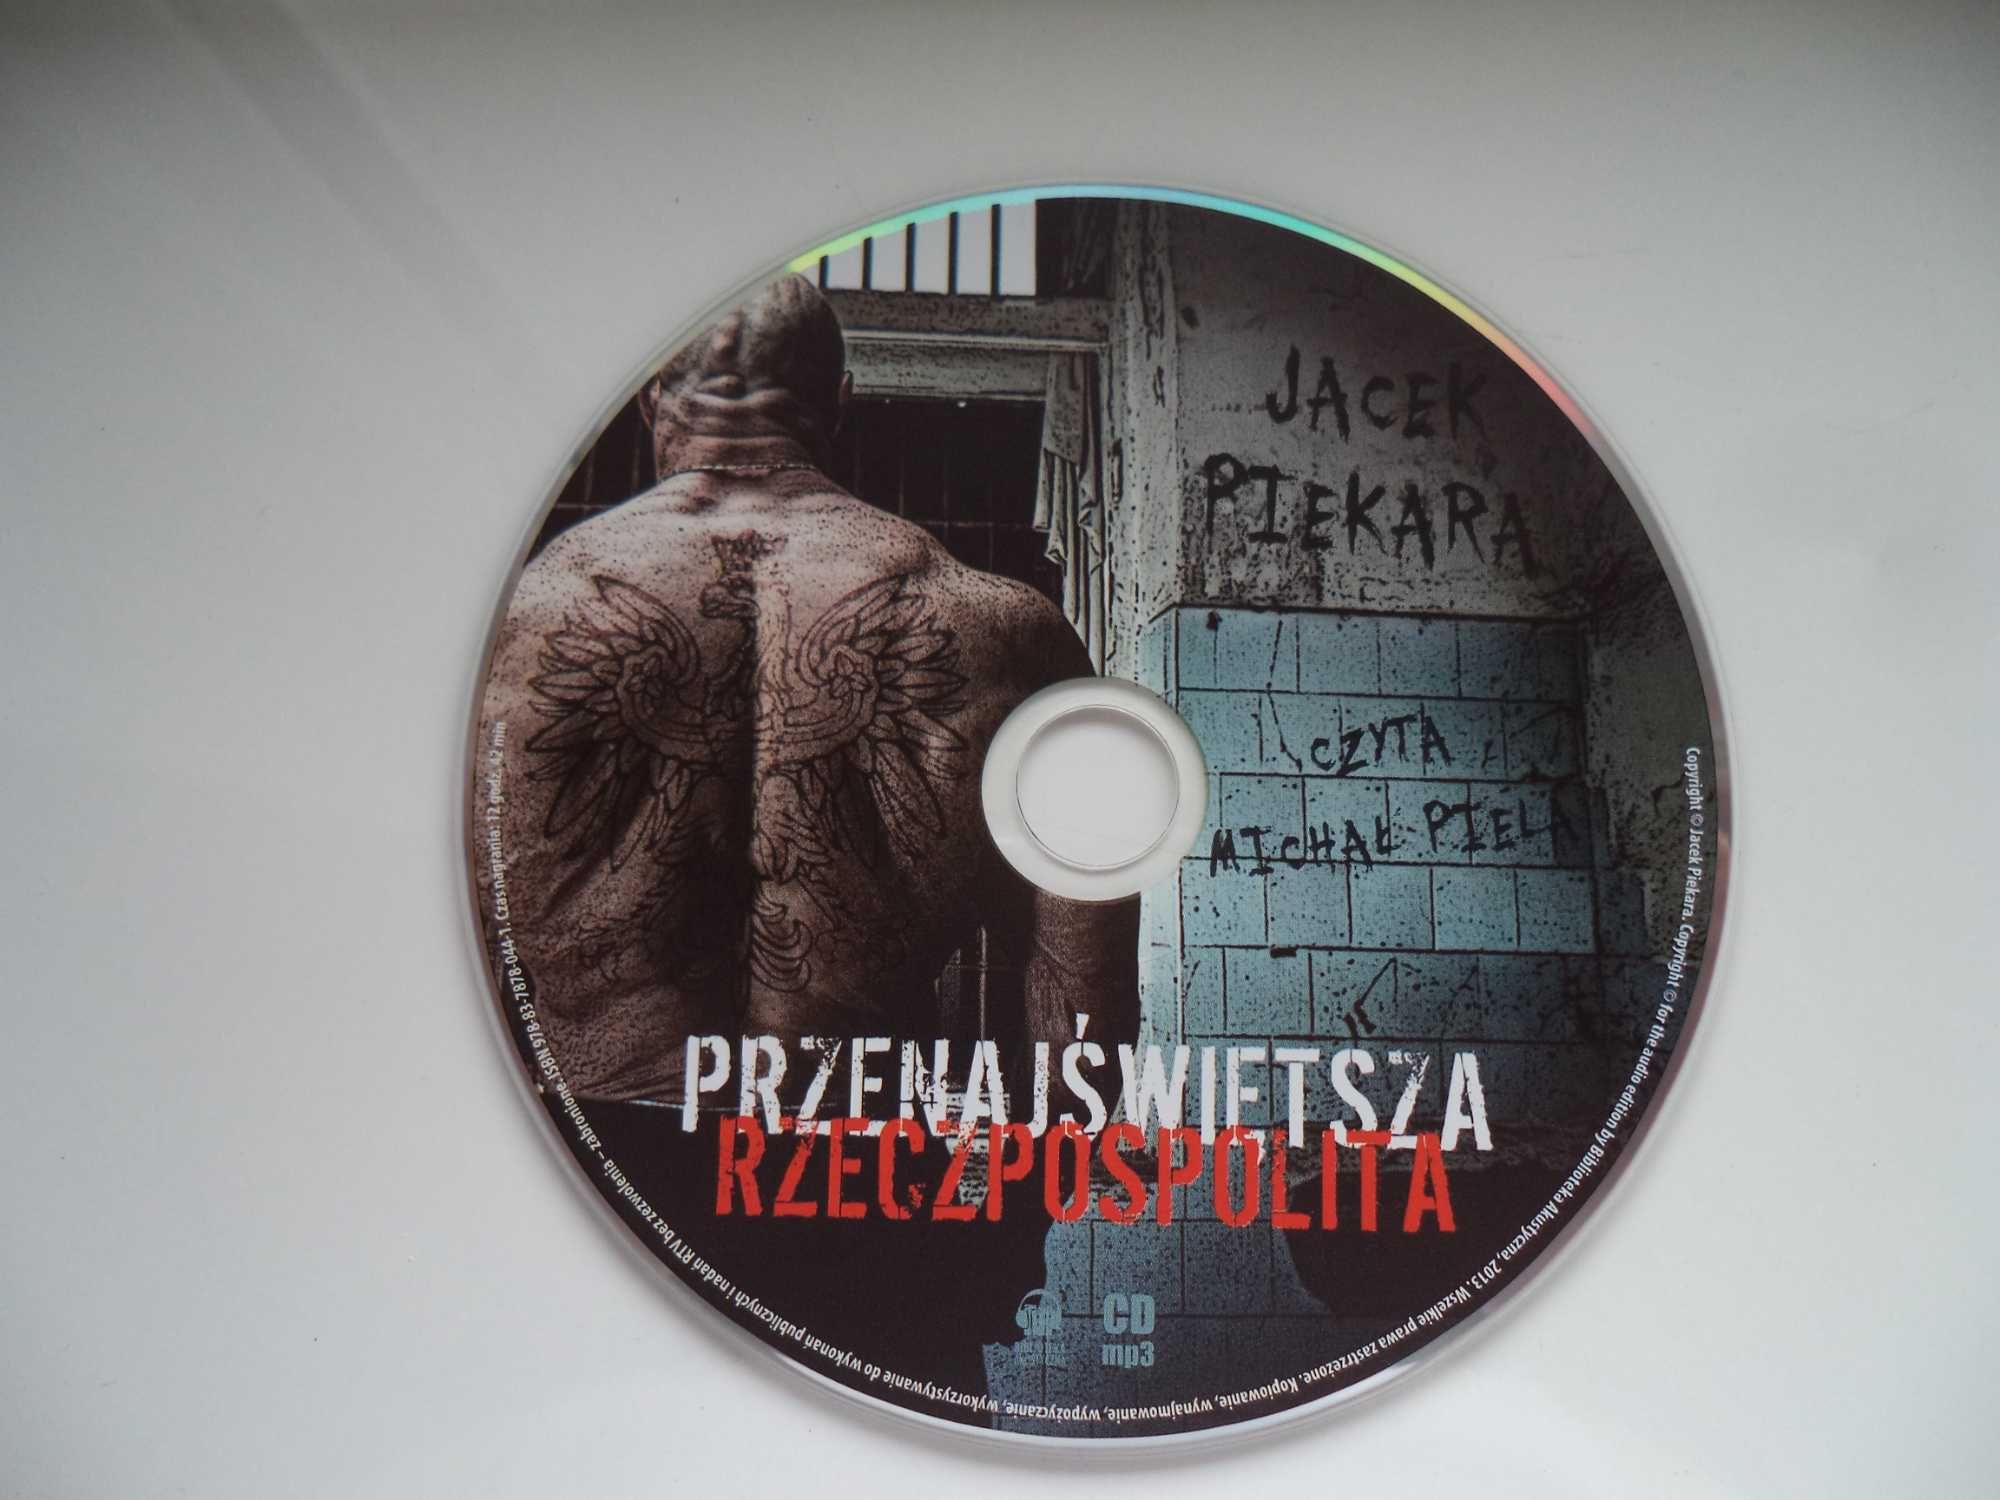 Przenajświętsza Rzeczpospolita audiobook cd